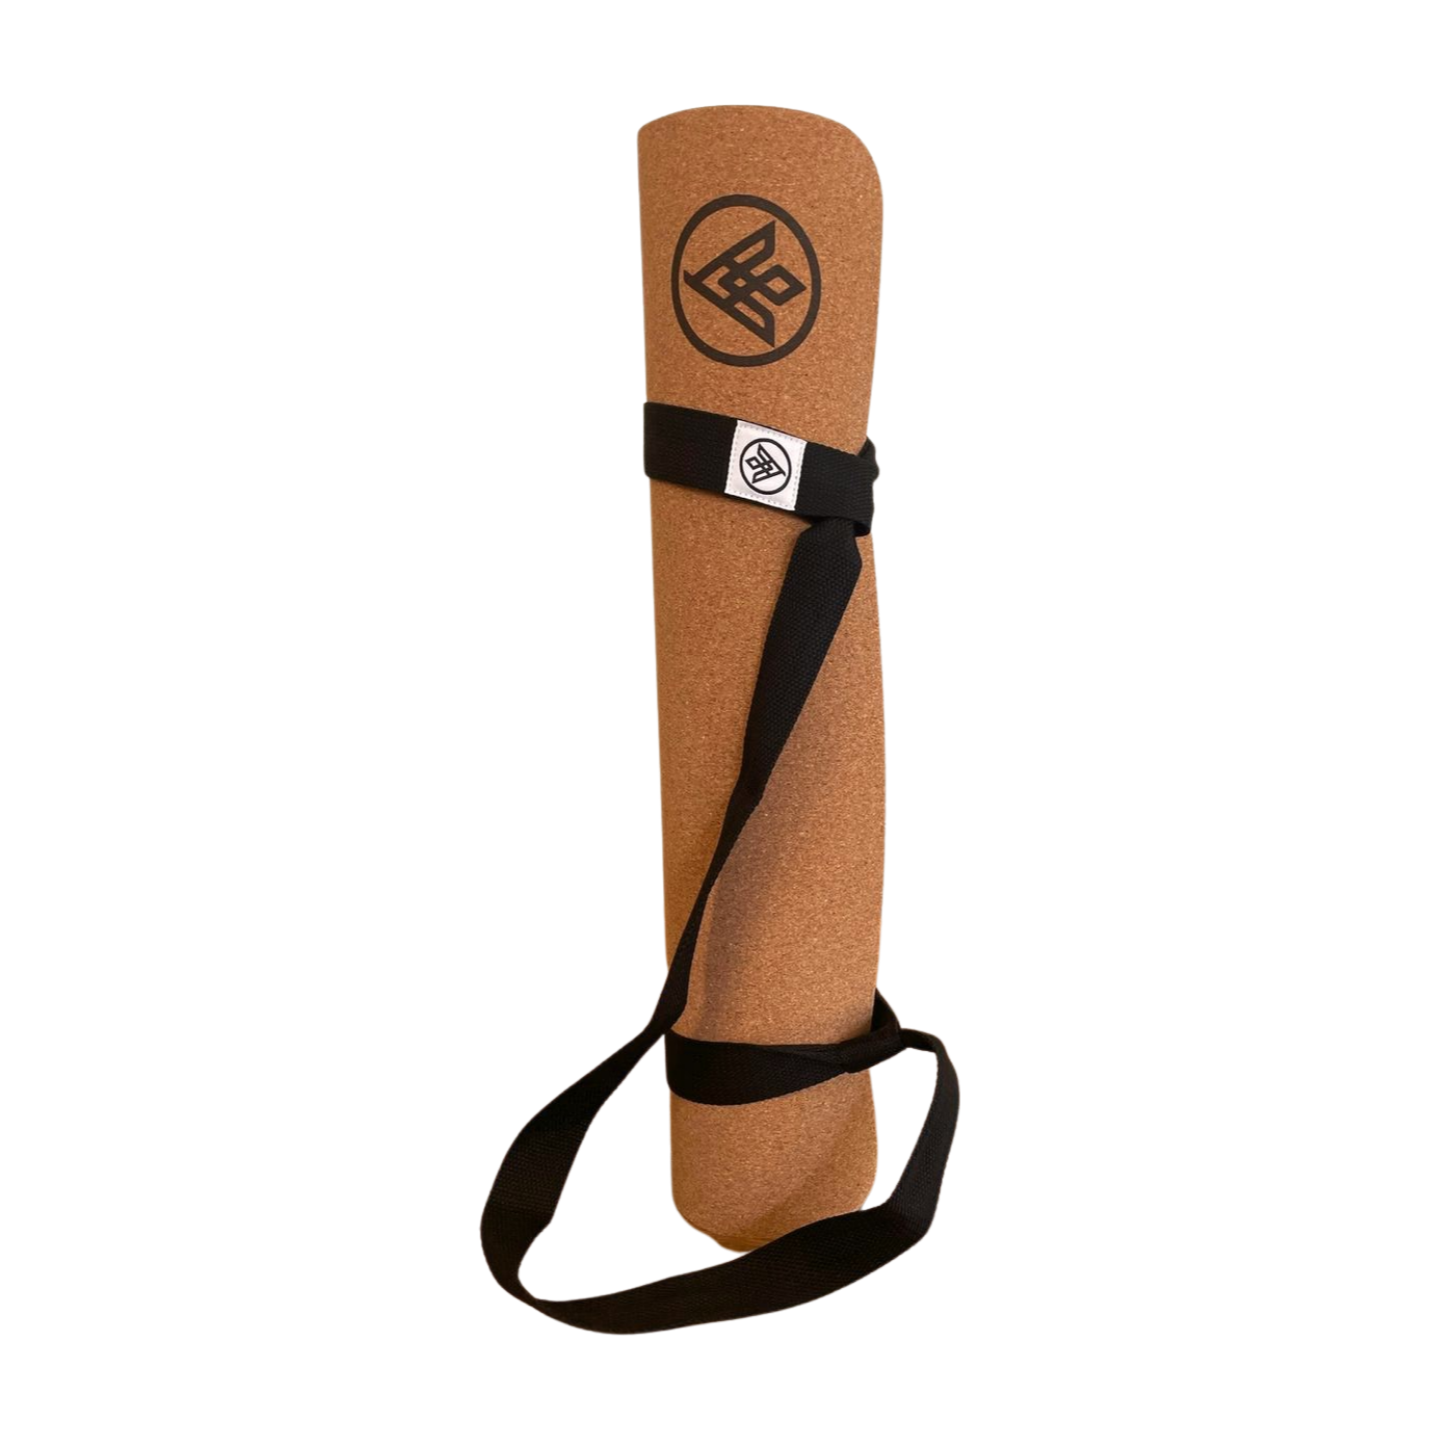 Beginner's Yoga Starter Kit Set - 6mm Thick Non-Slip Exercise Yoga